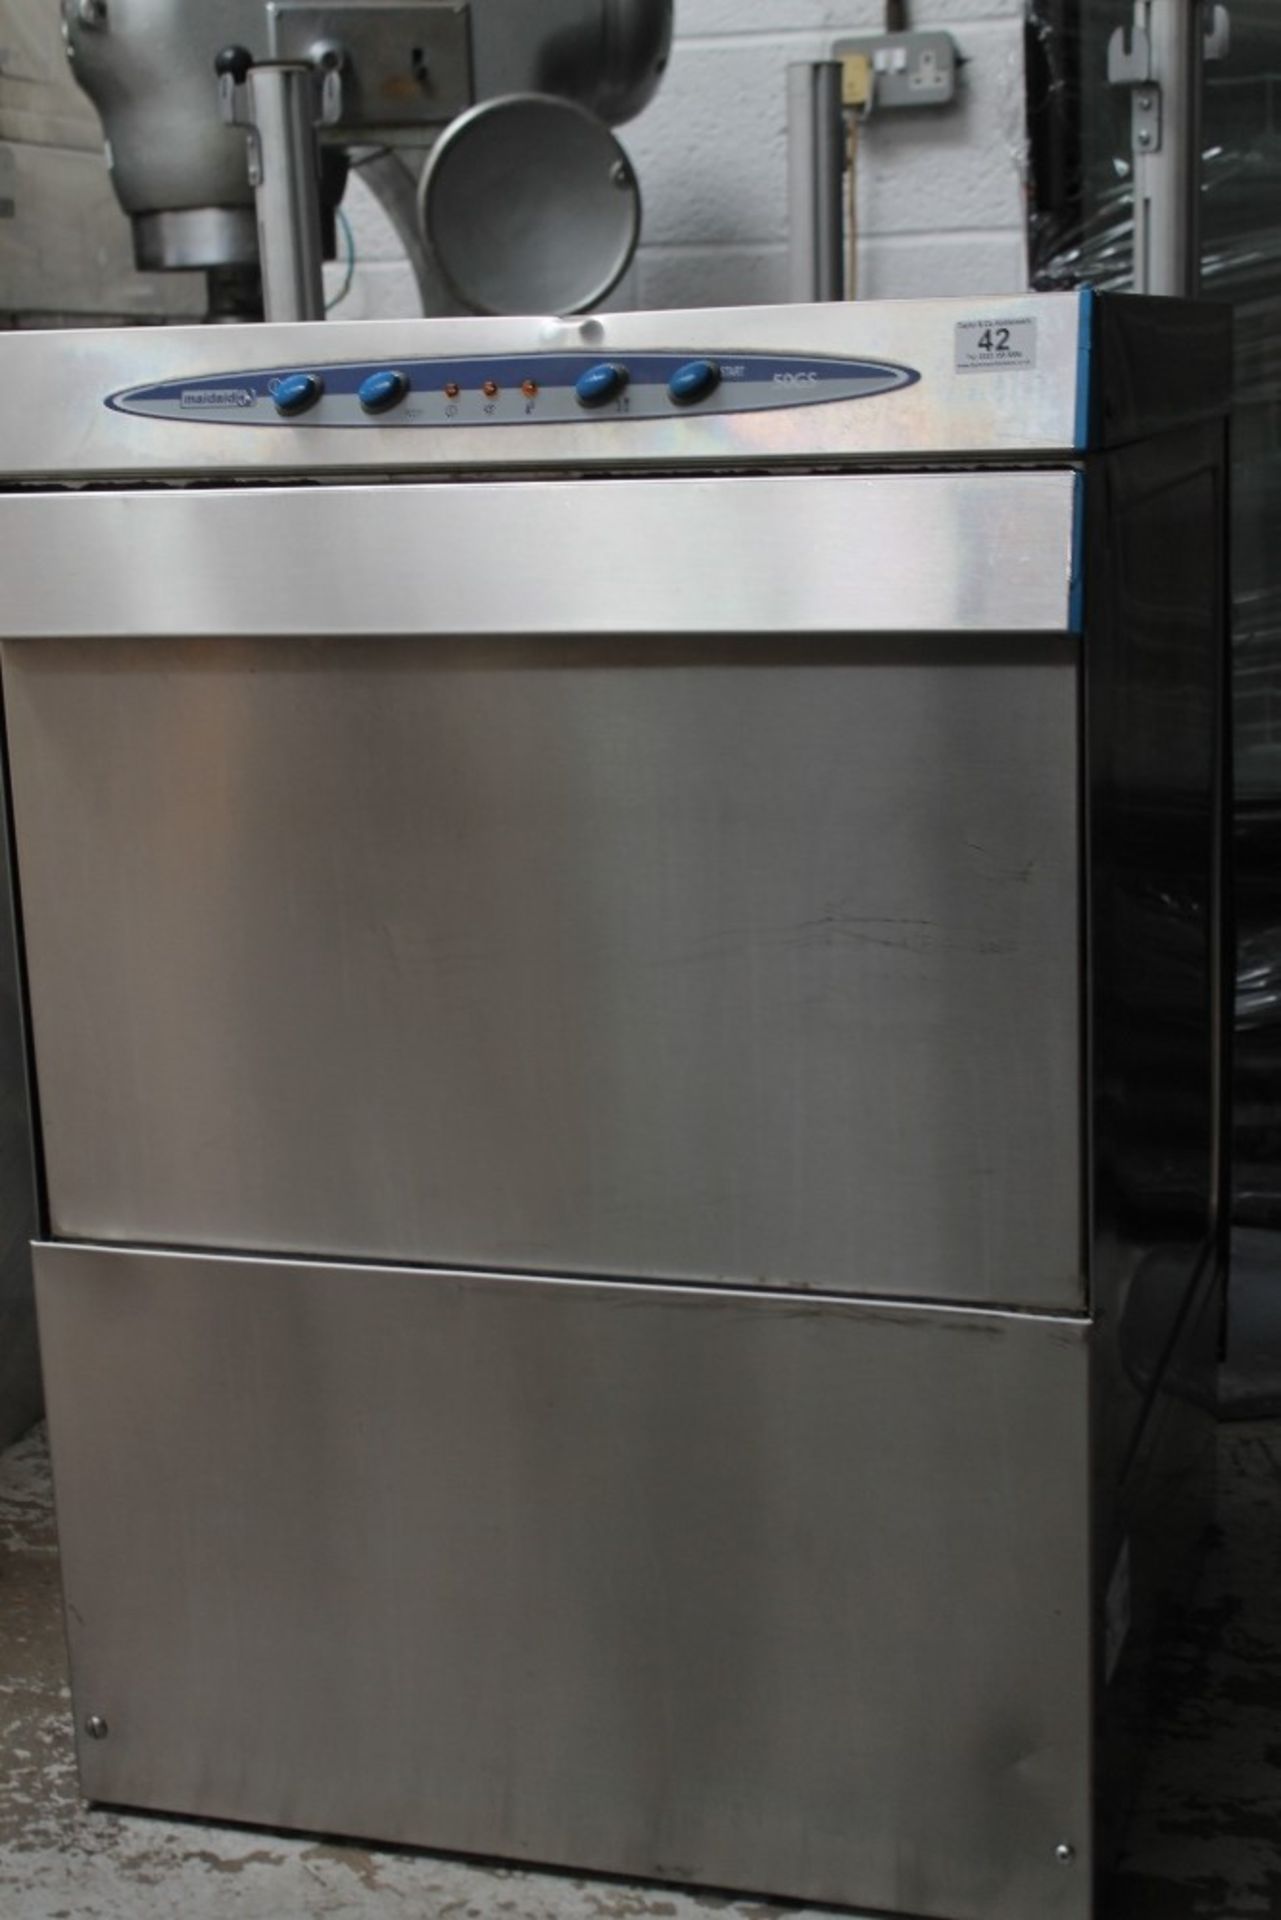 Maidaid Dishwasher – Tested – NO VAT – Model OGSDP915865